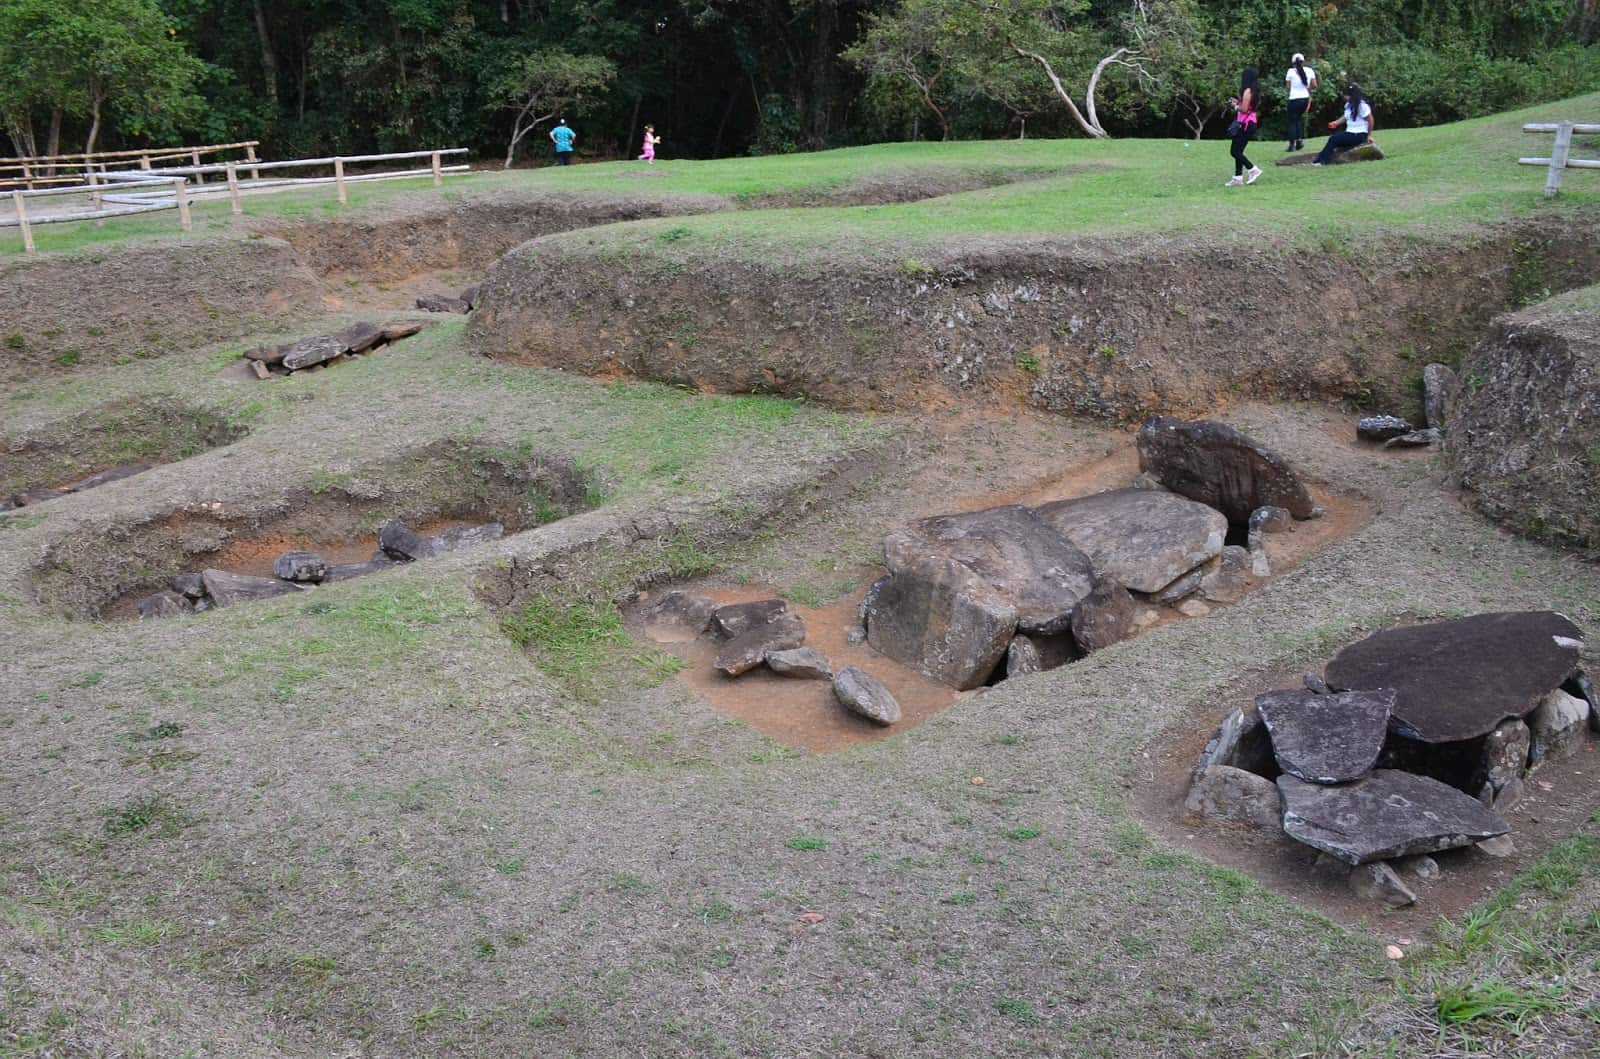 Mesita B at San Agustín Archaeological Park in Huila, Colombia